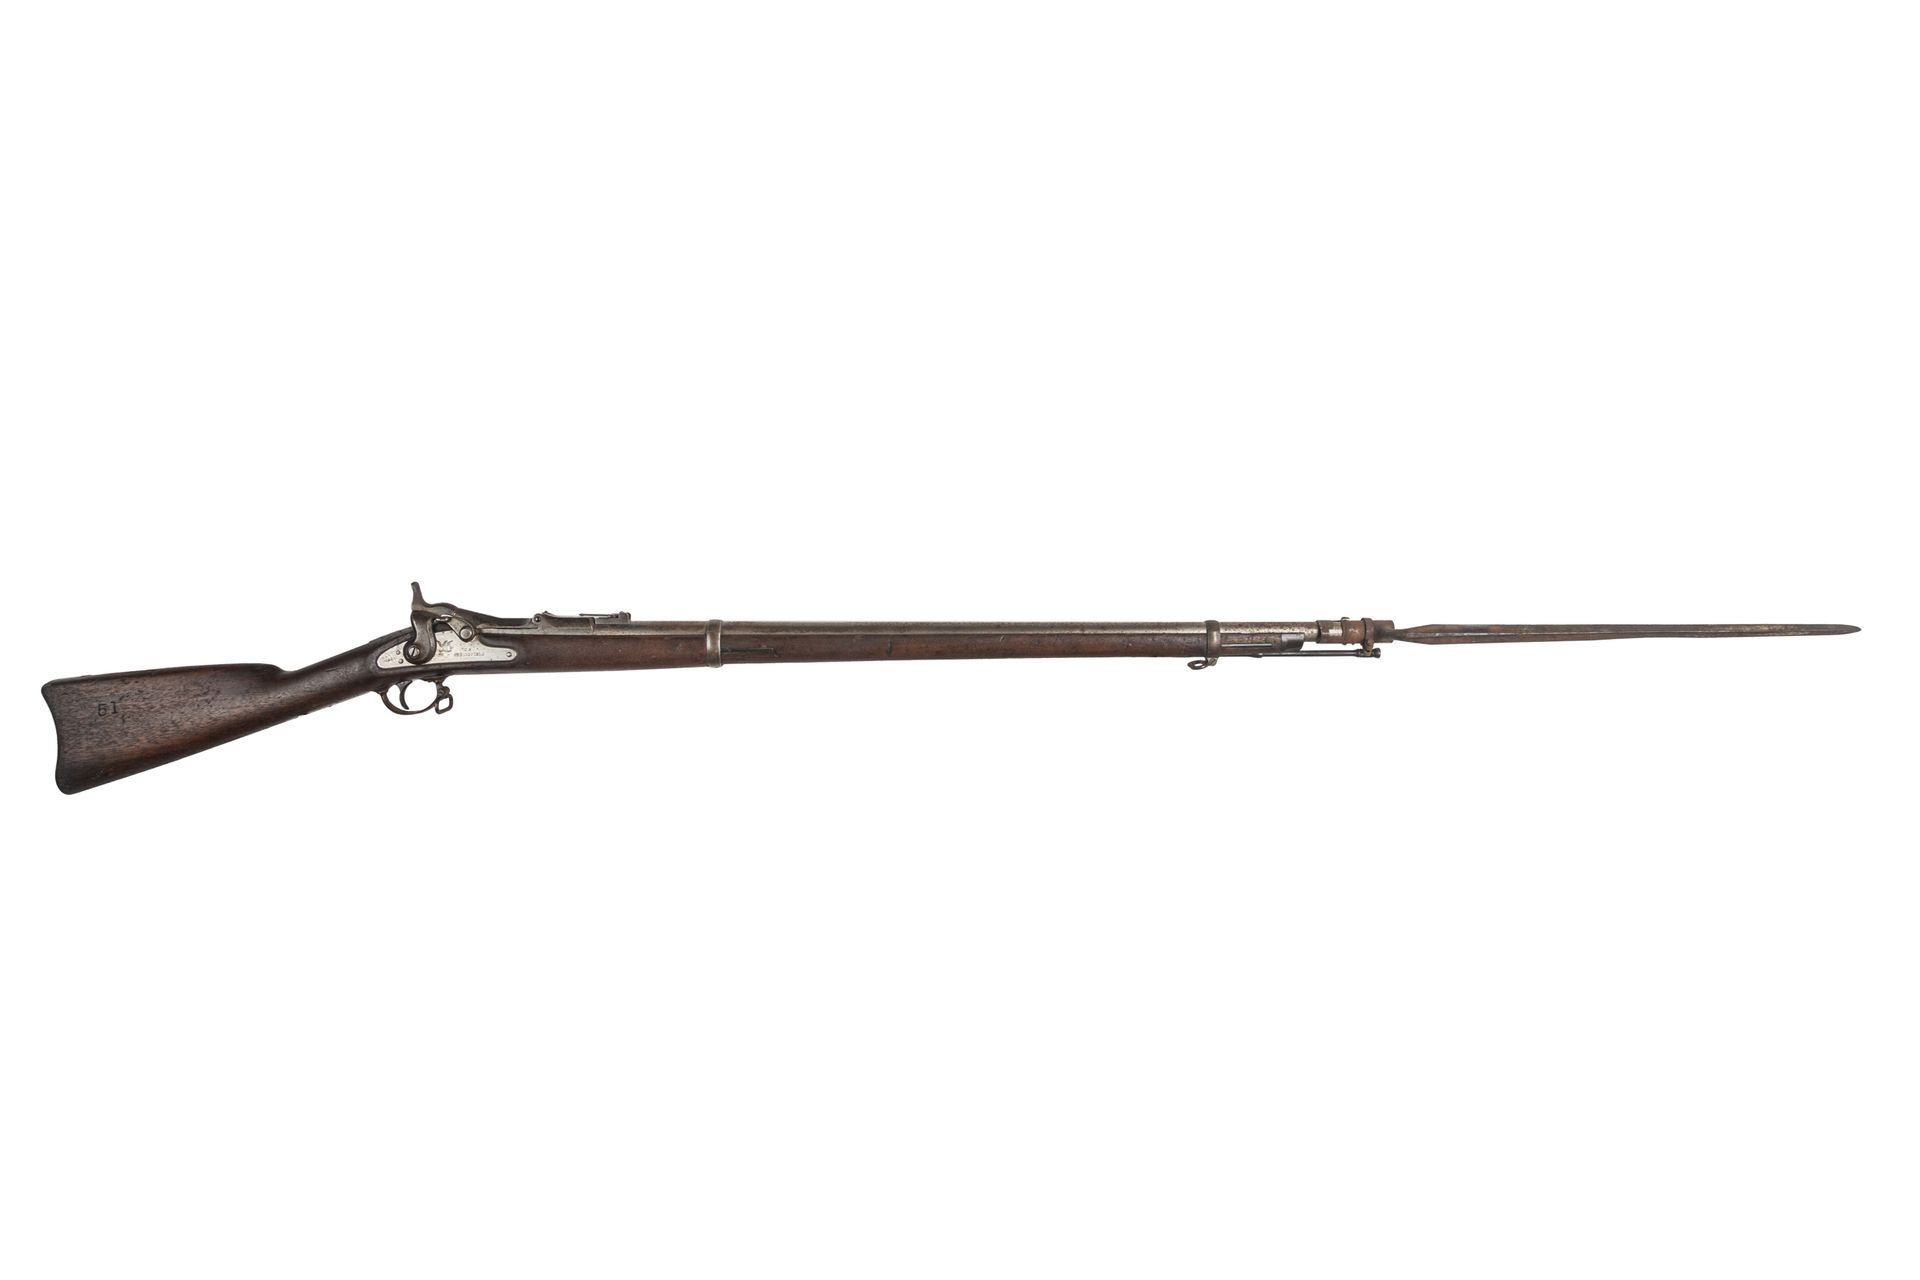 Null Fusil Springfield modificado con tabaquera, calibre 44. 

Cañón redondo con&hellip;